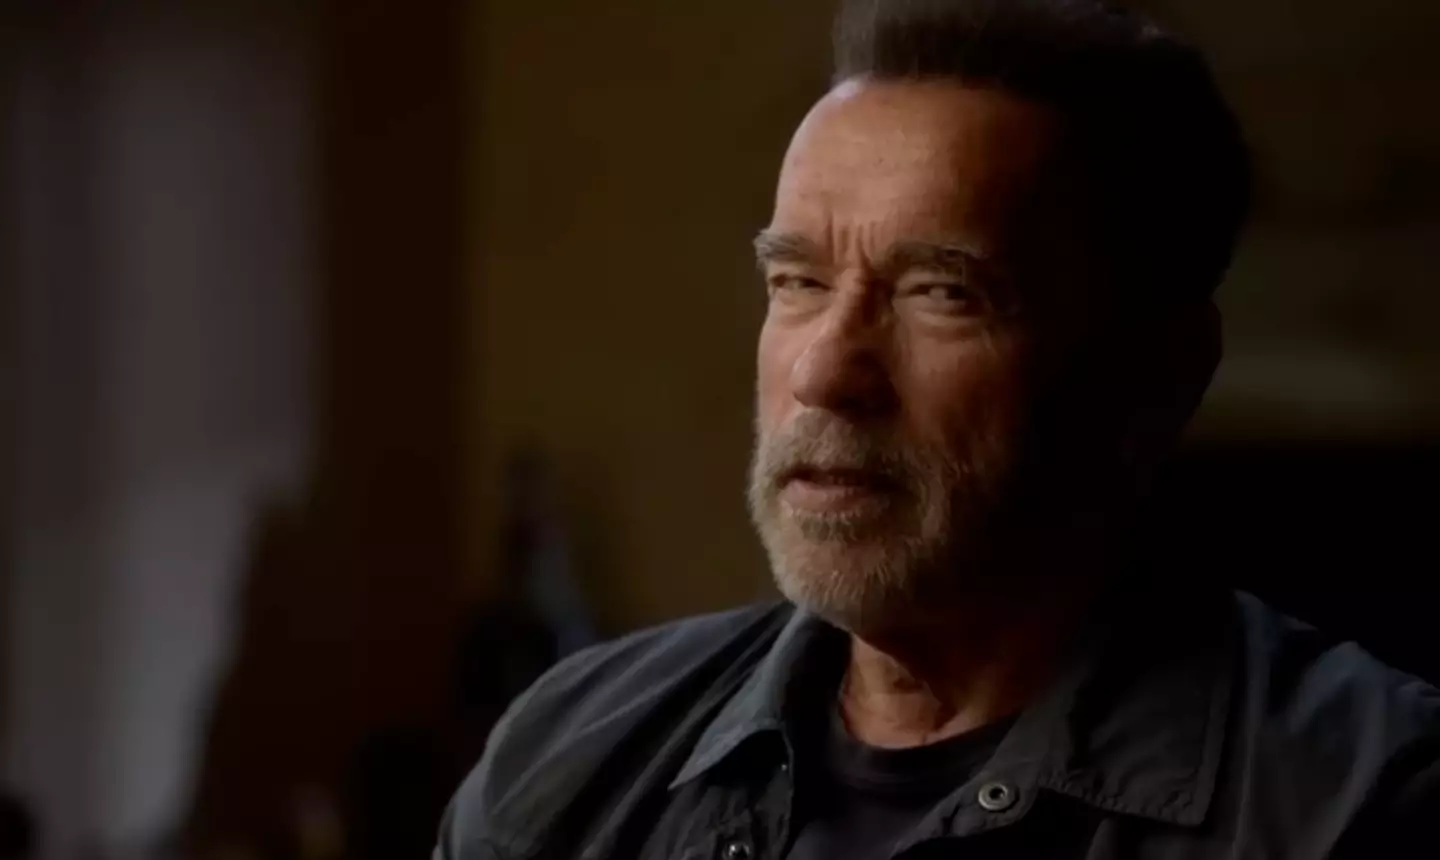 Schwarzenegger has reflected on his behaviour as 'wrong'.